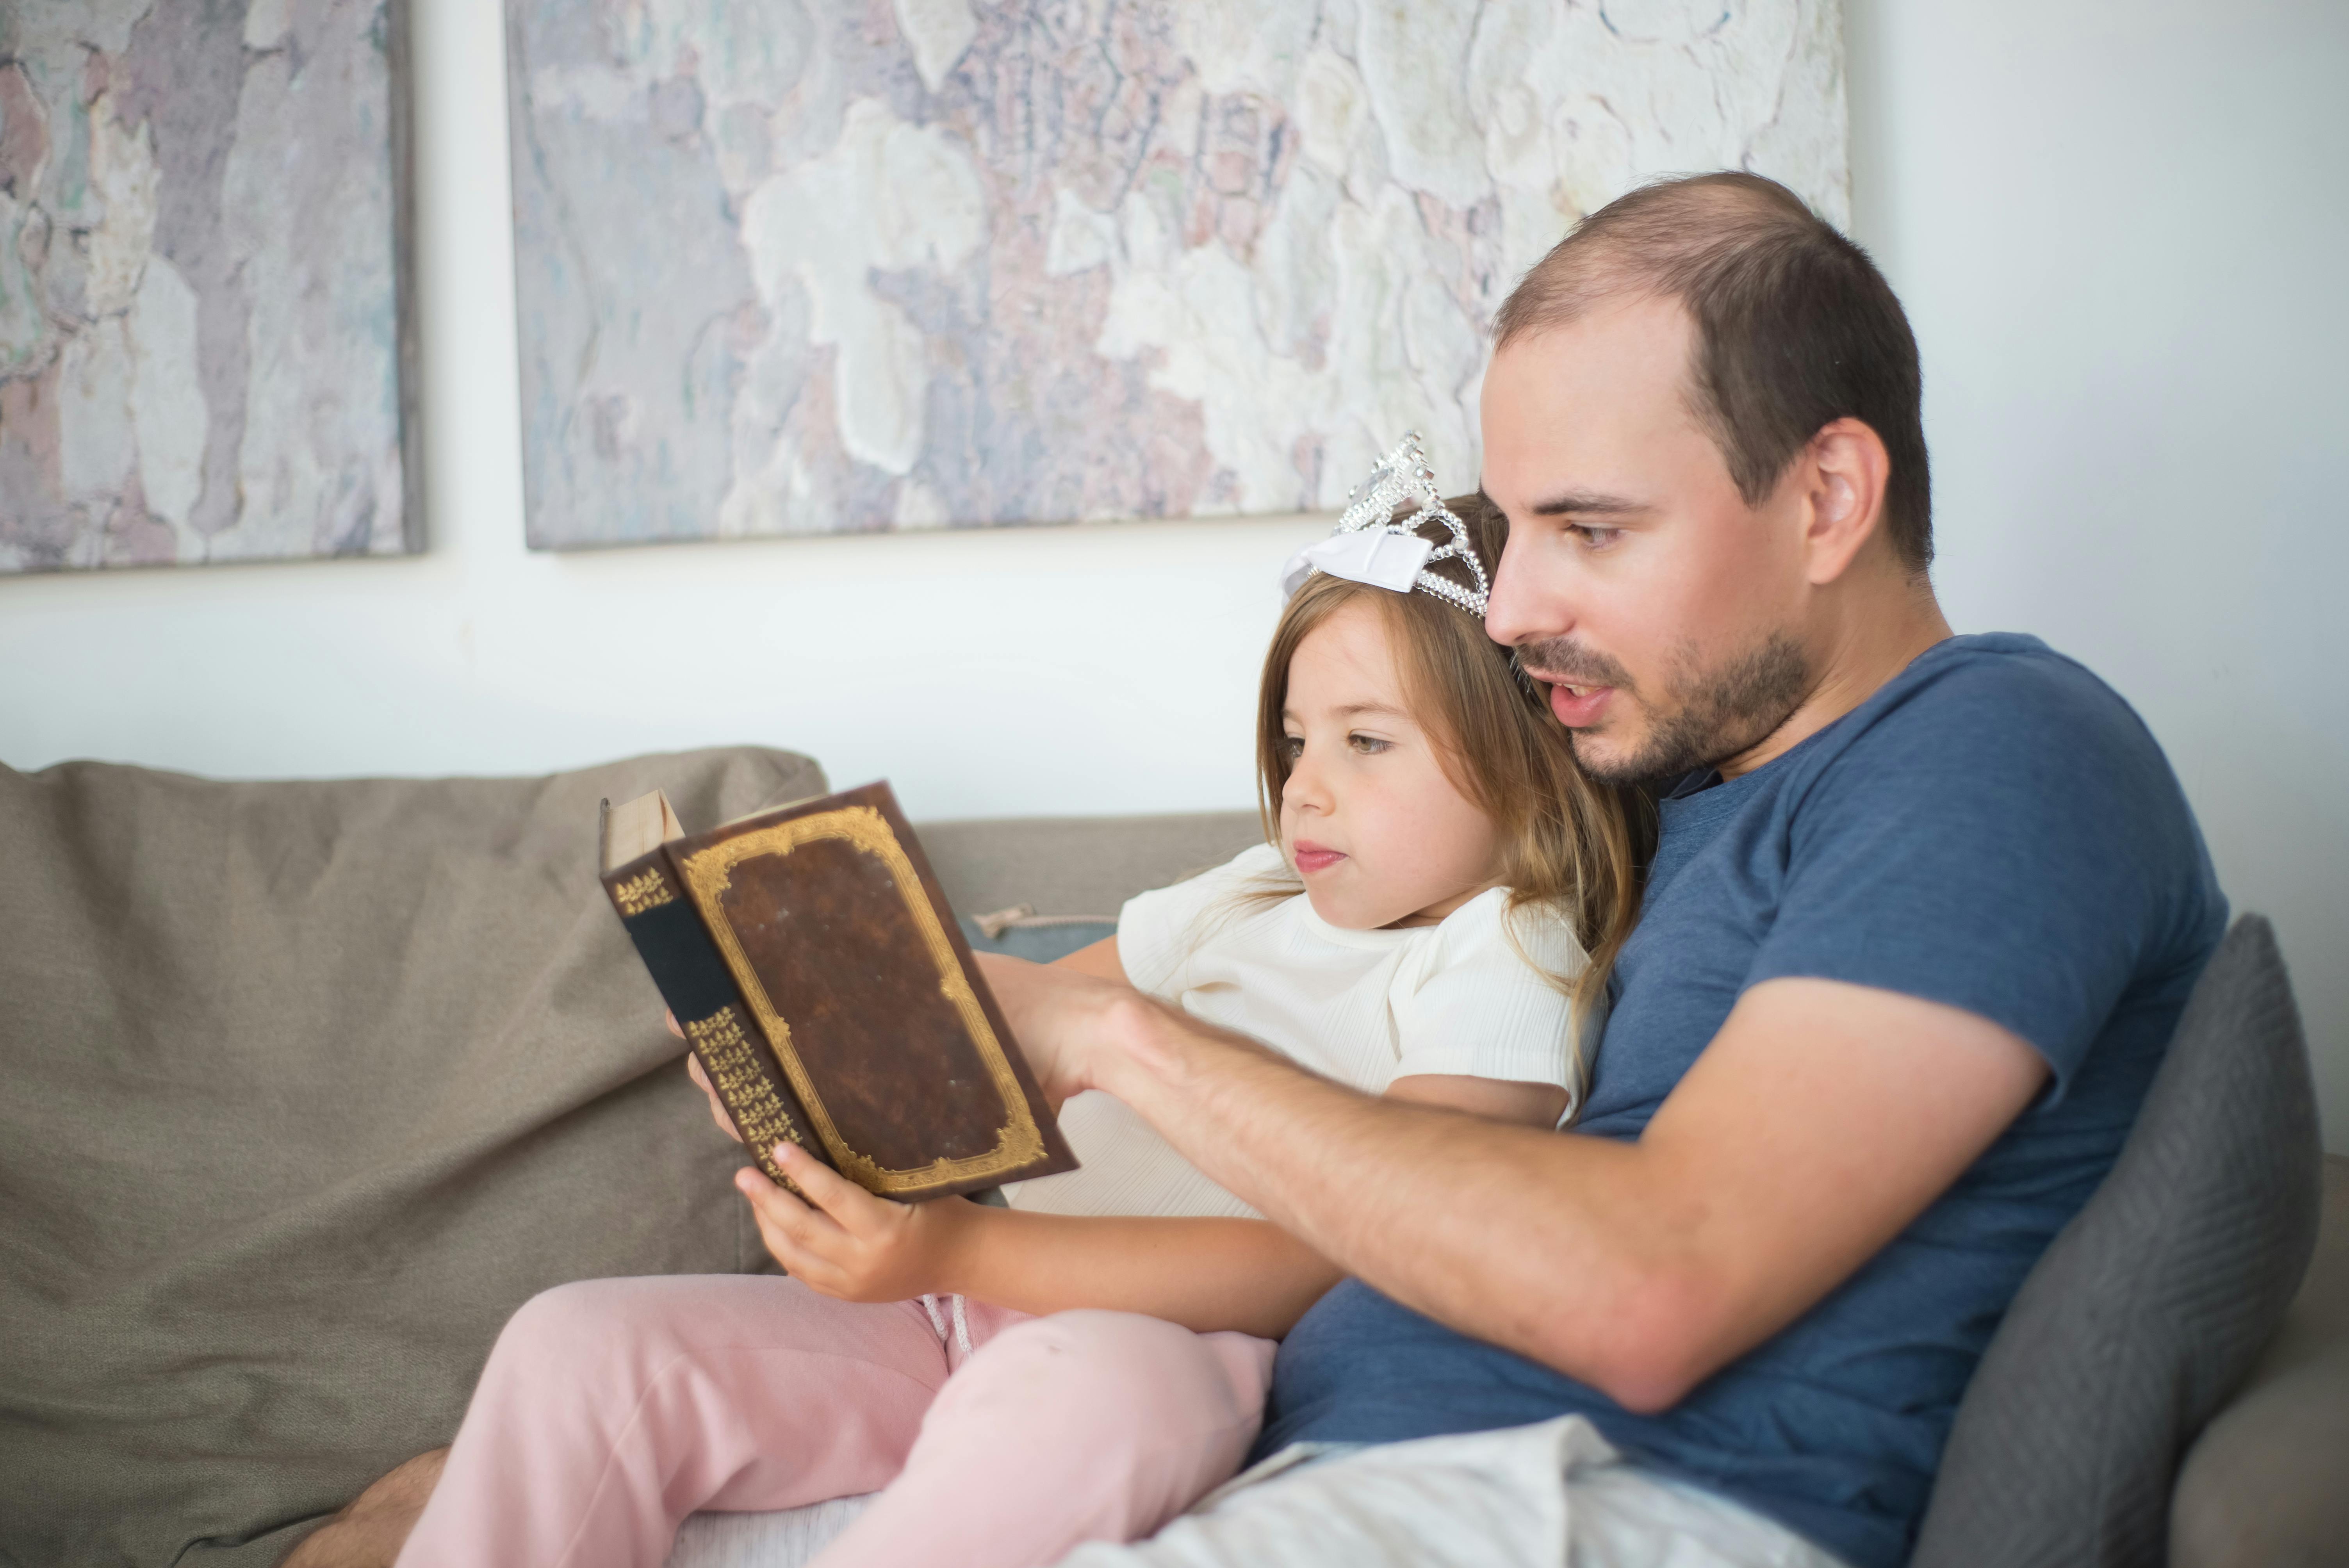 Père et fille lisant ensemble | Source : Pexels